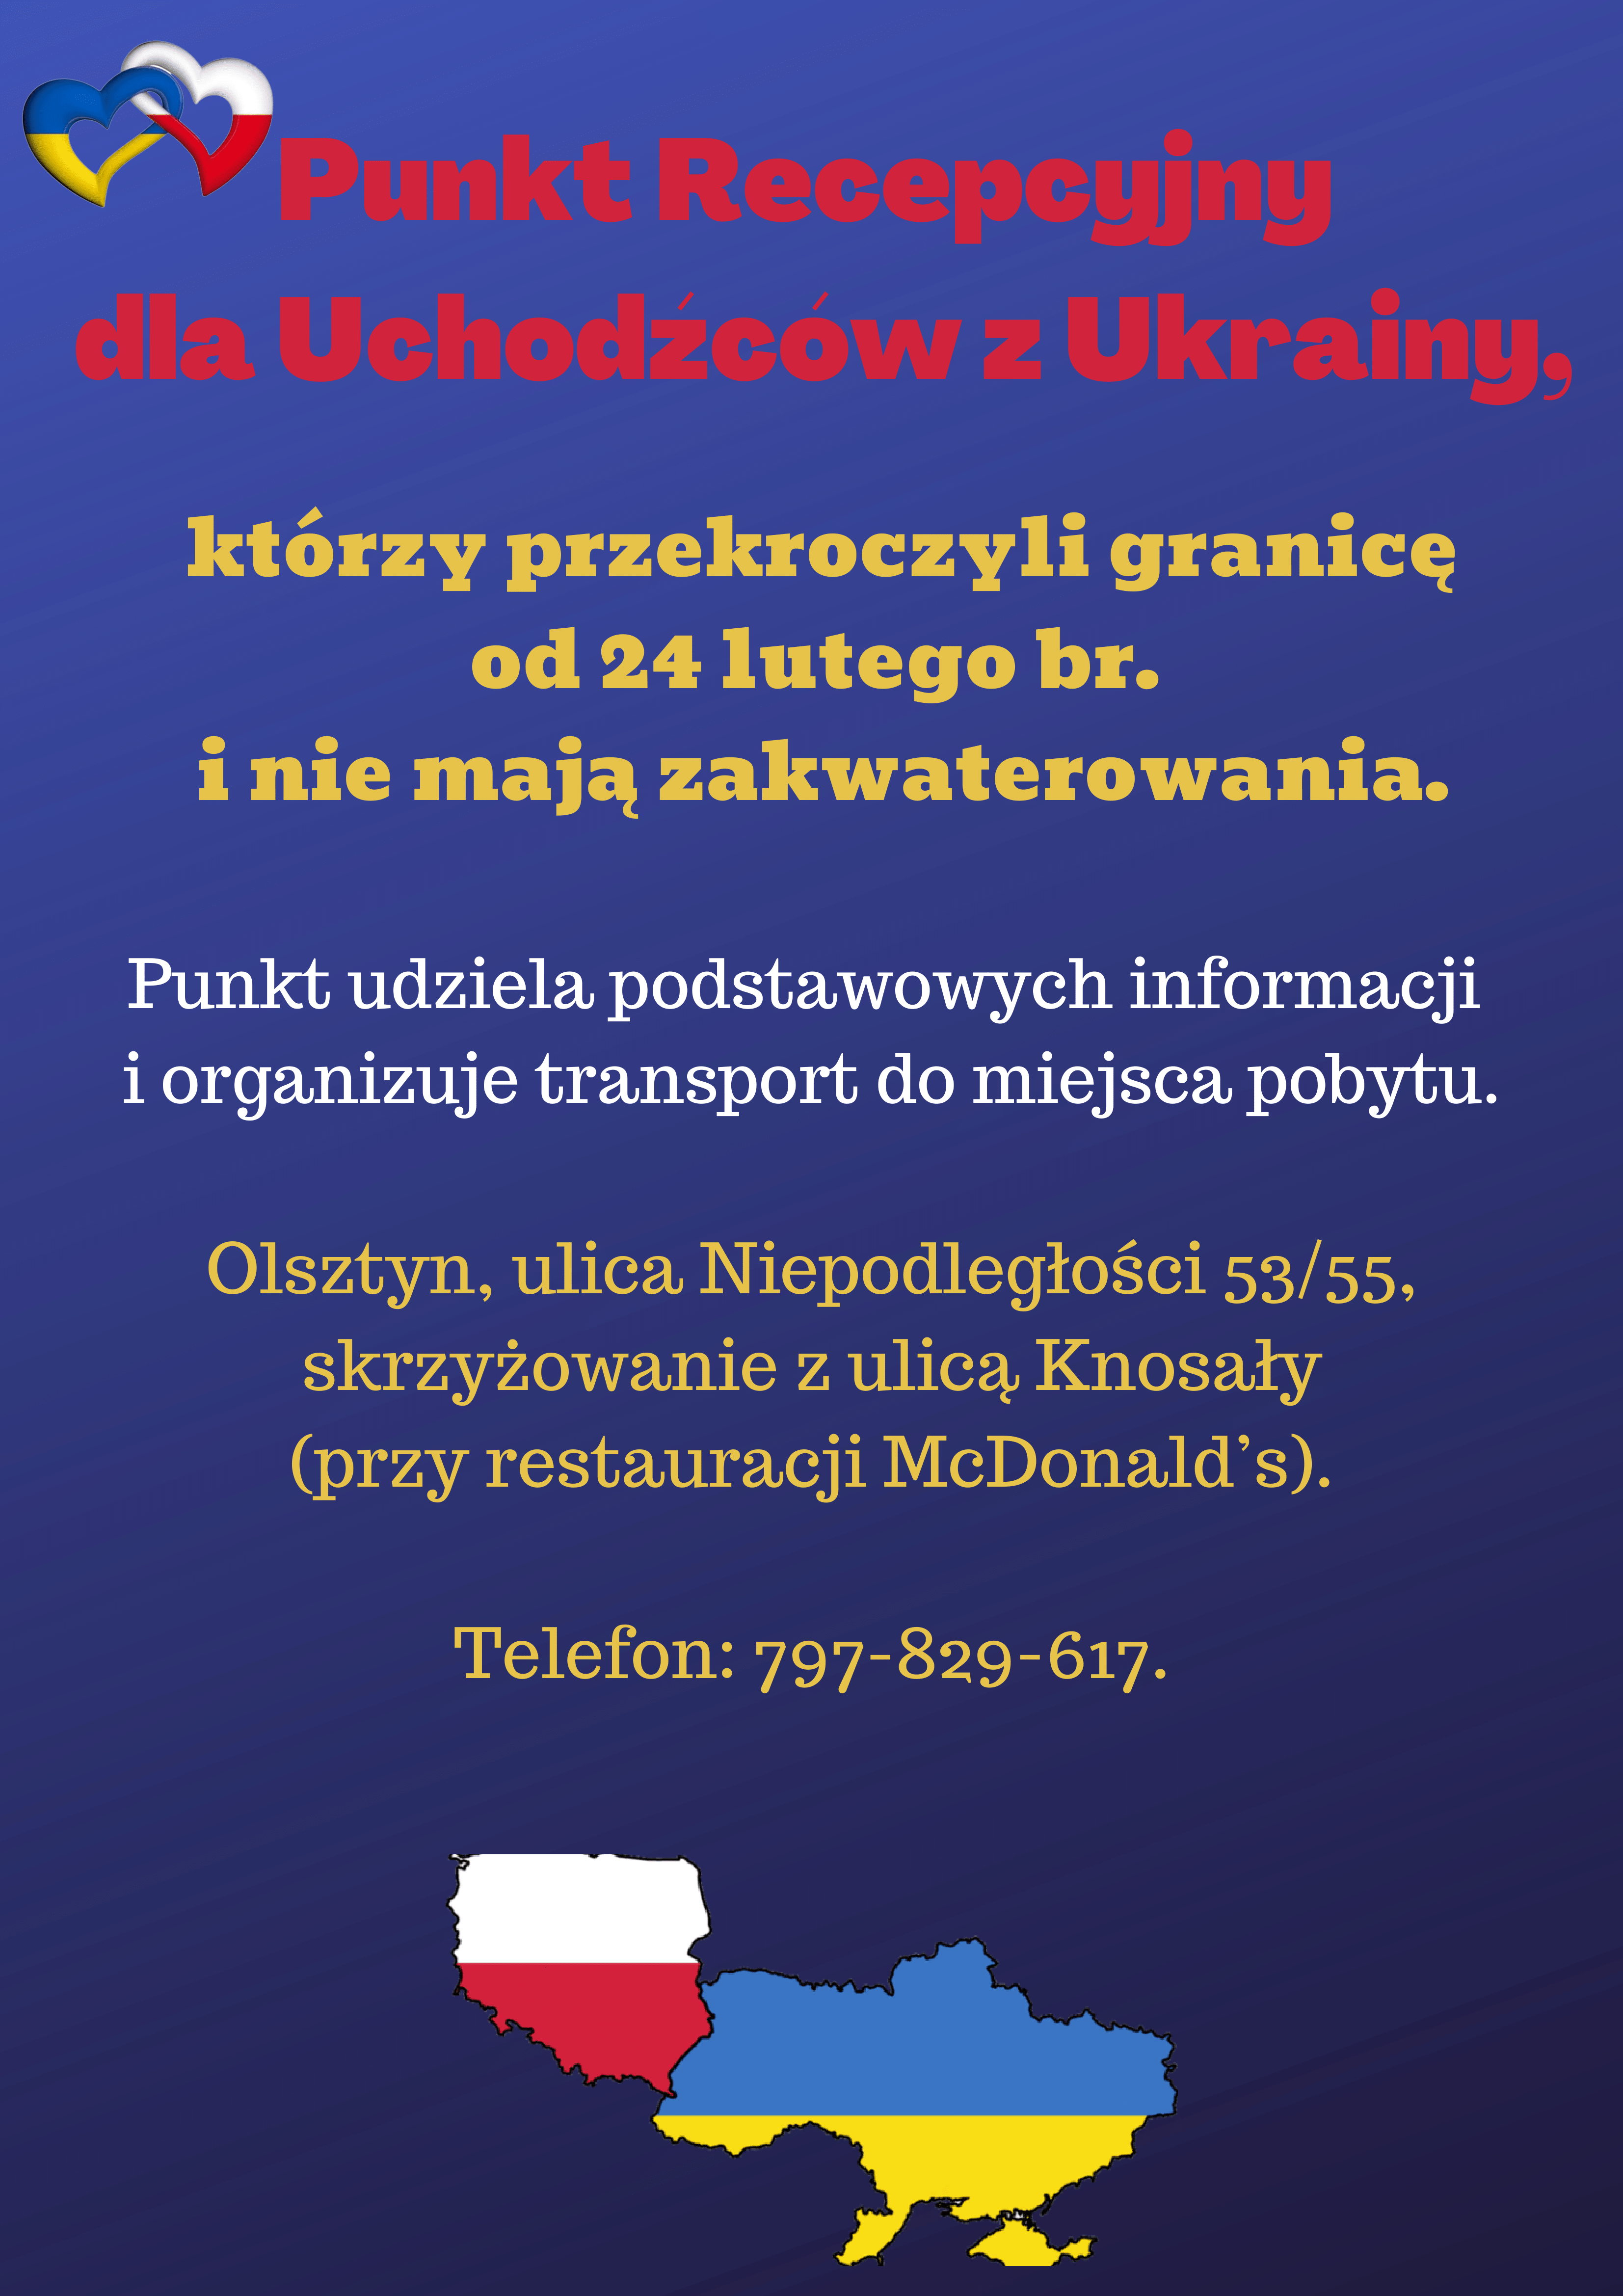 https://m.powiatszczycienski.pl/2022/03/orig/punkt-recepcyjny-1-48731.png